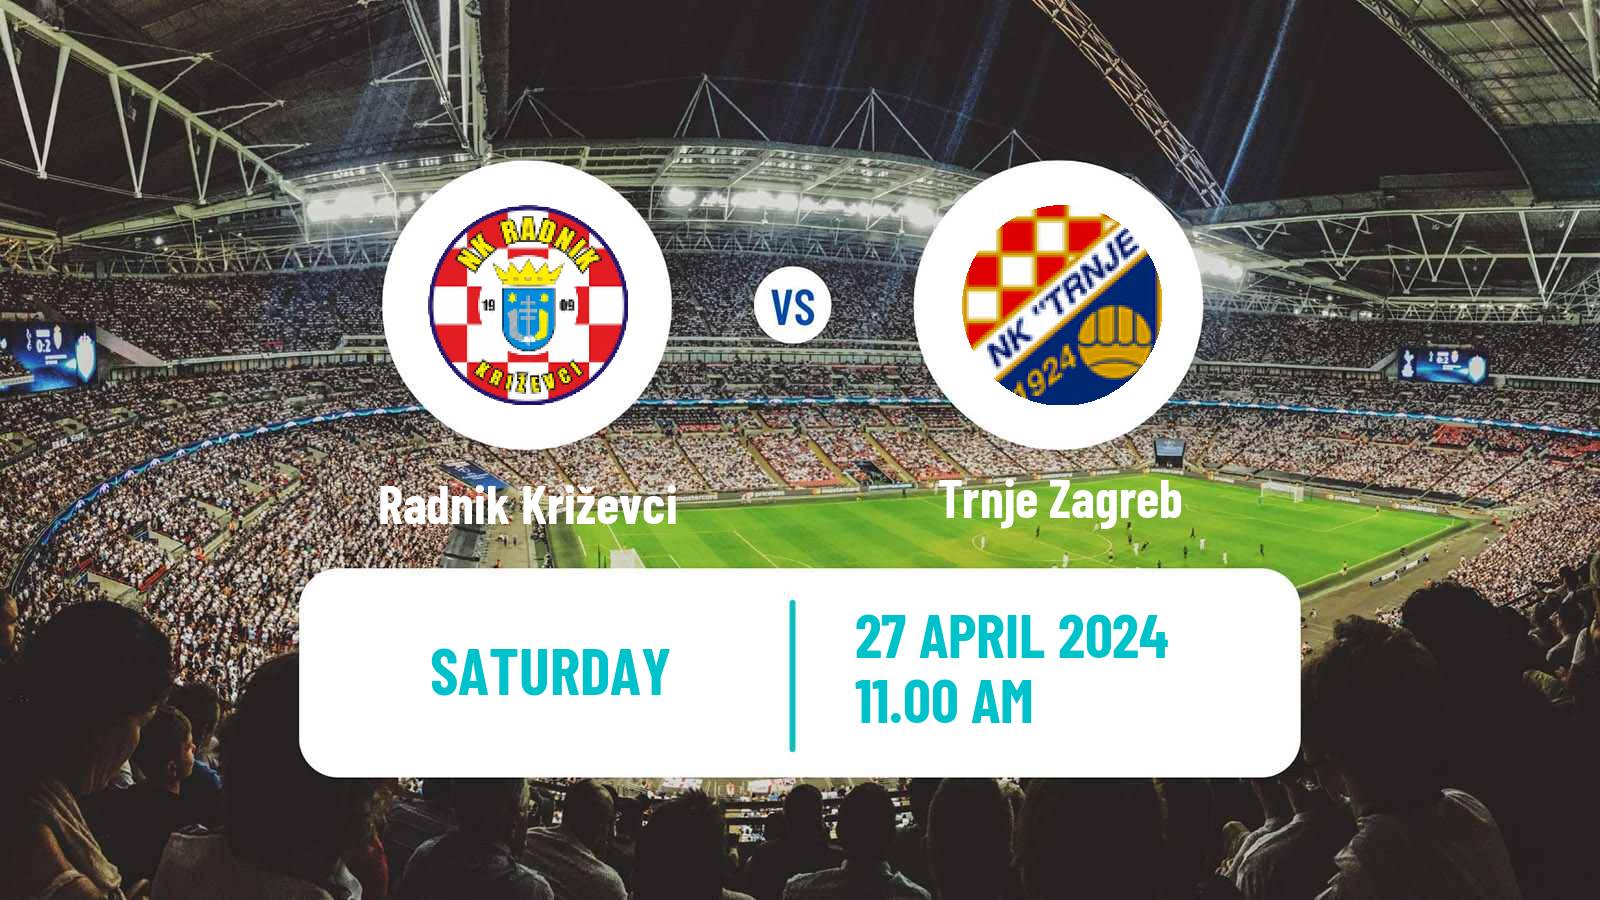 Soccer Croatian Druga NL Radnik Križevci - Trnje Zagreb